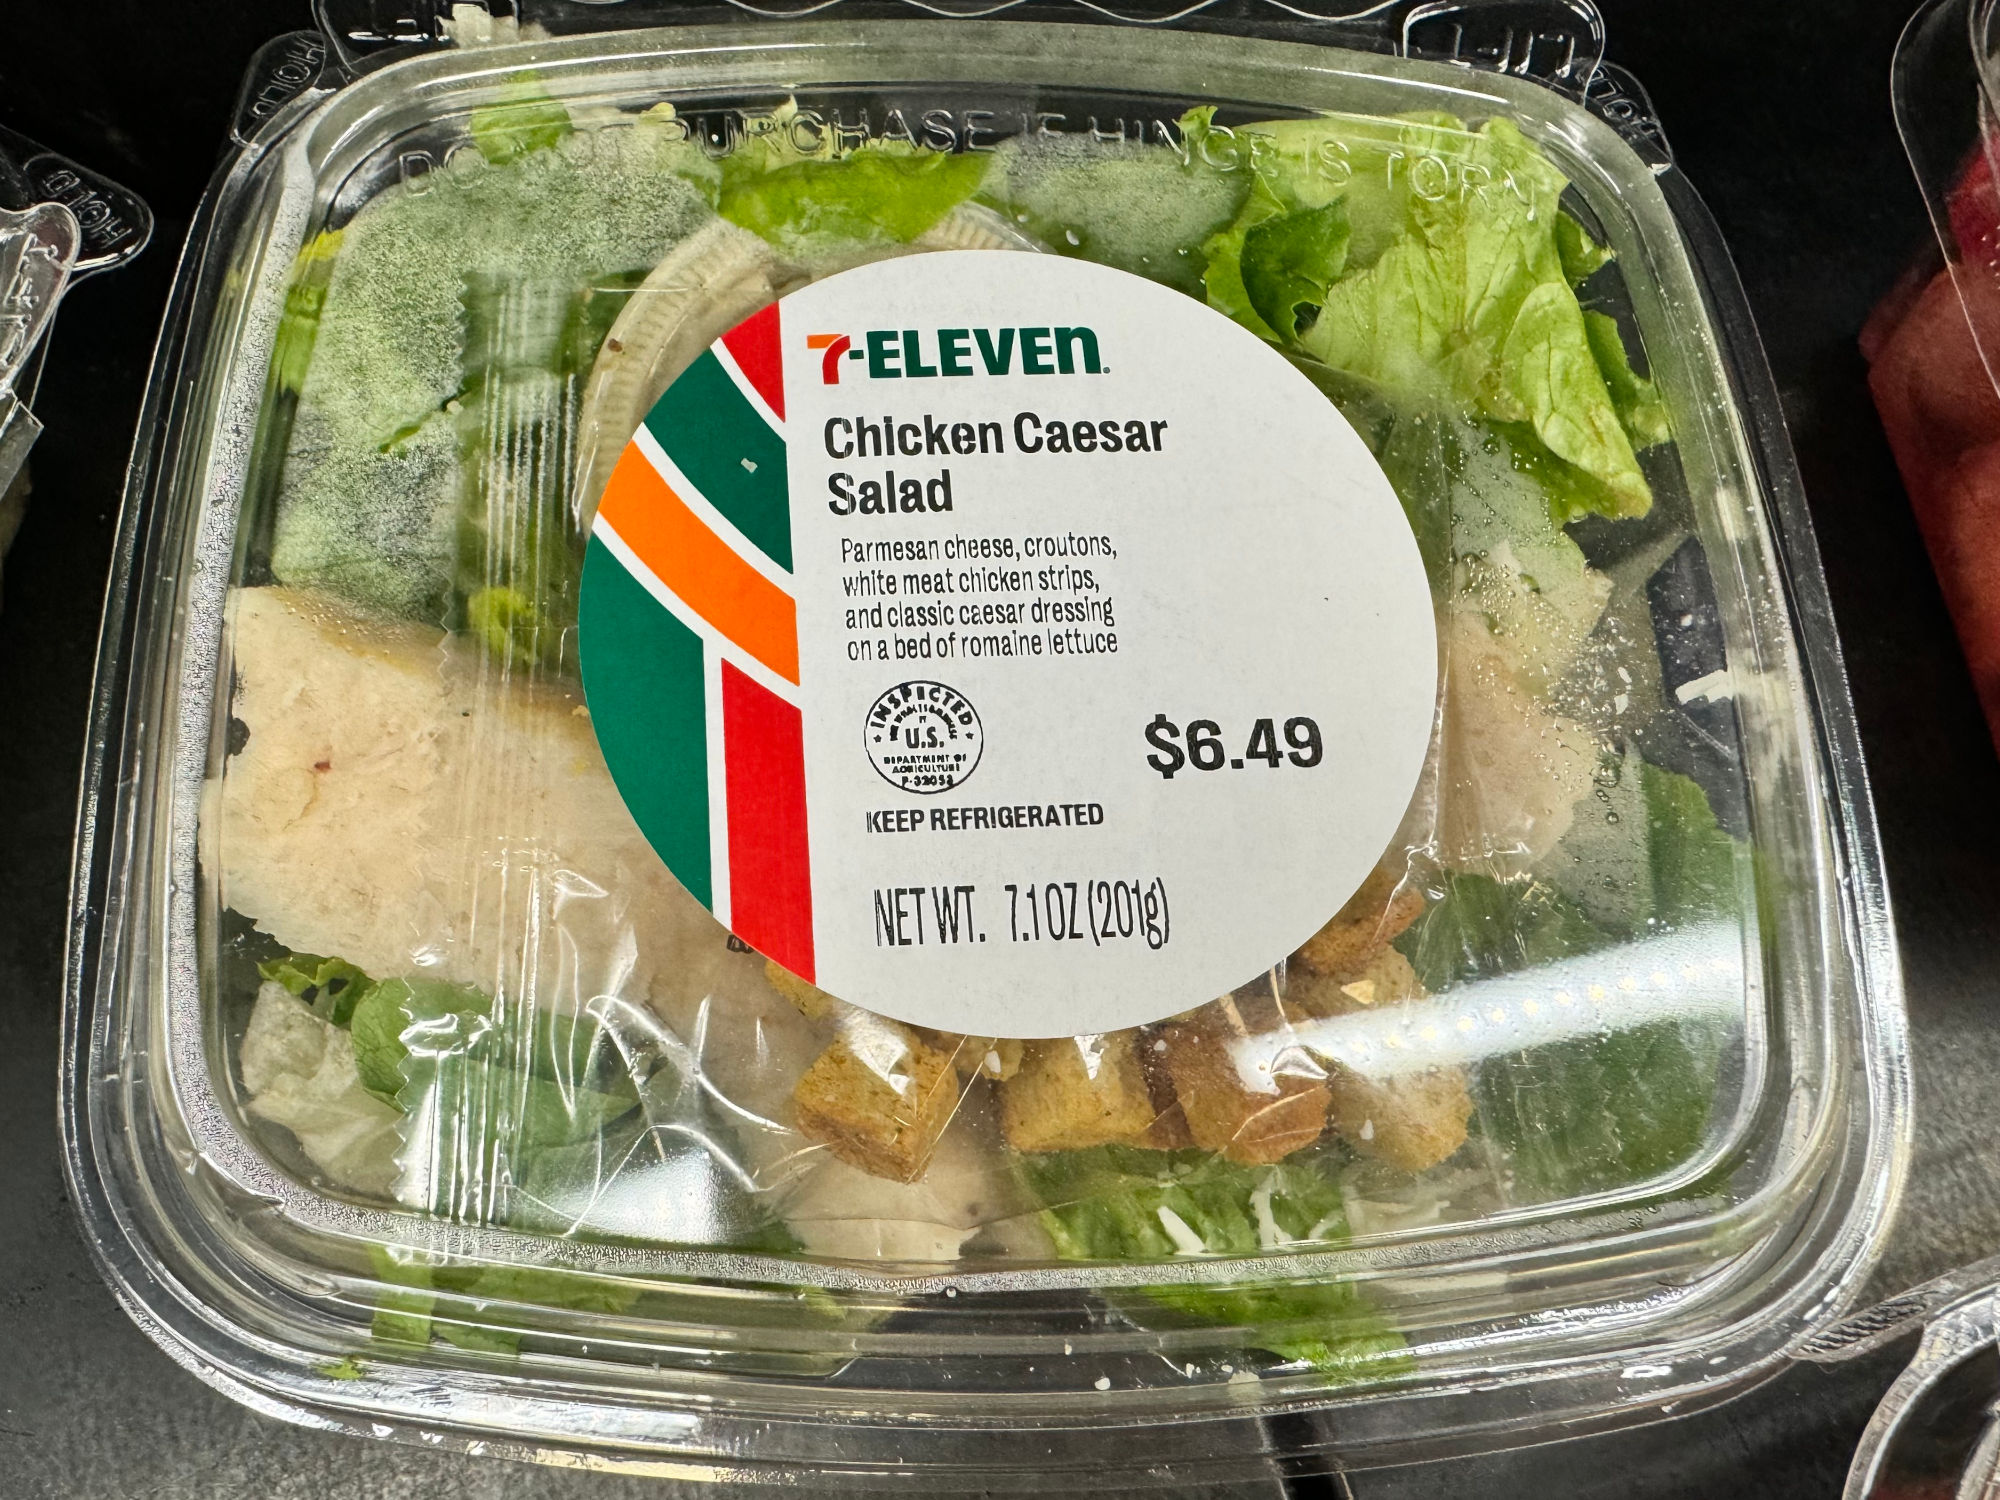 7-Eleven Chicken Caesar Salad